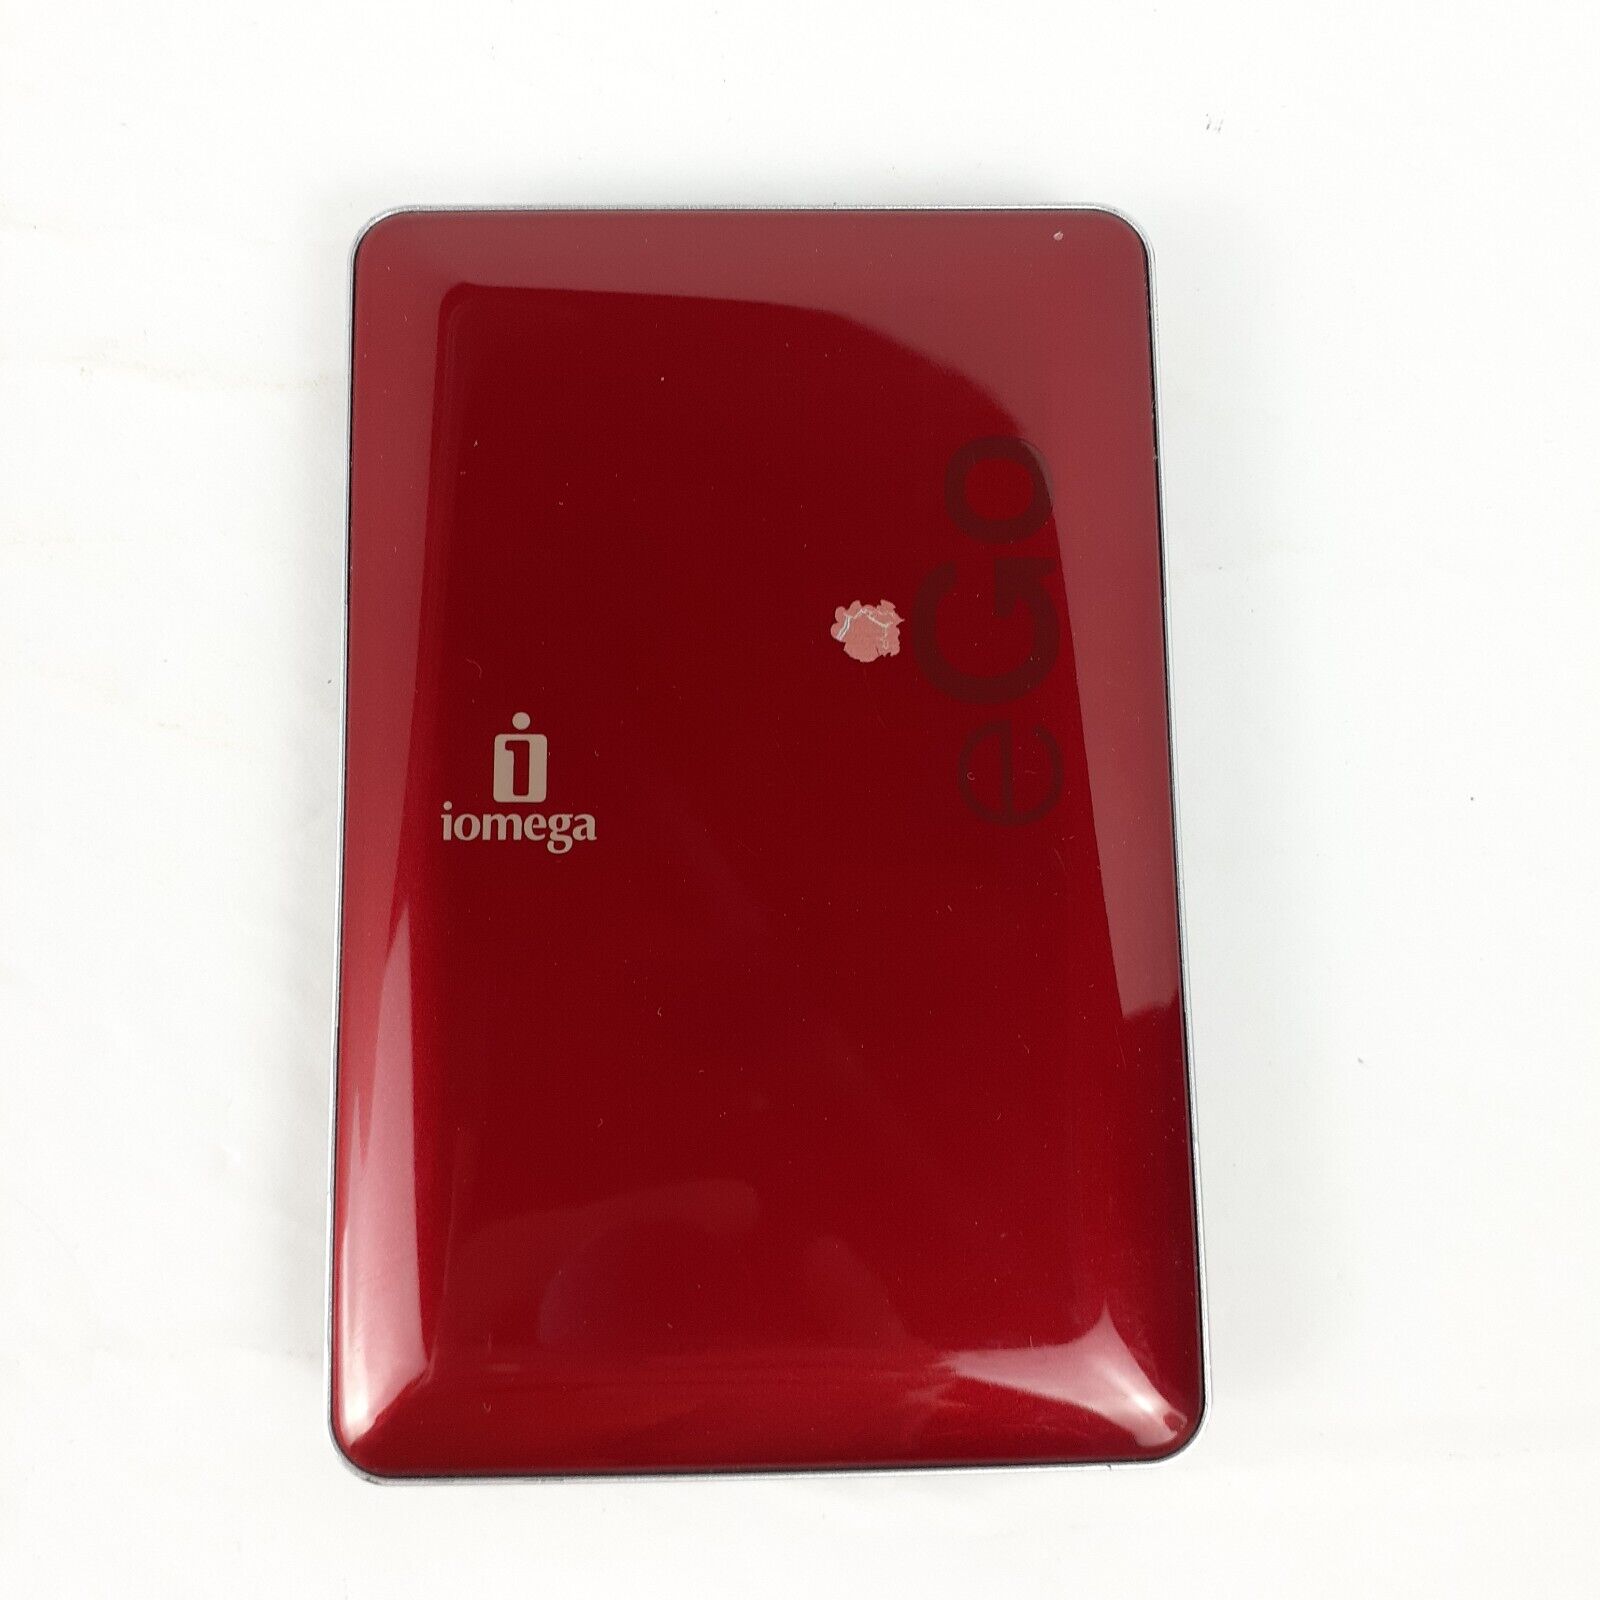 Iomega 500GB eGo Portable External Hard Drive Red RPHD-UG 31823300 Tested